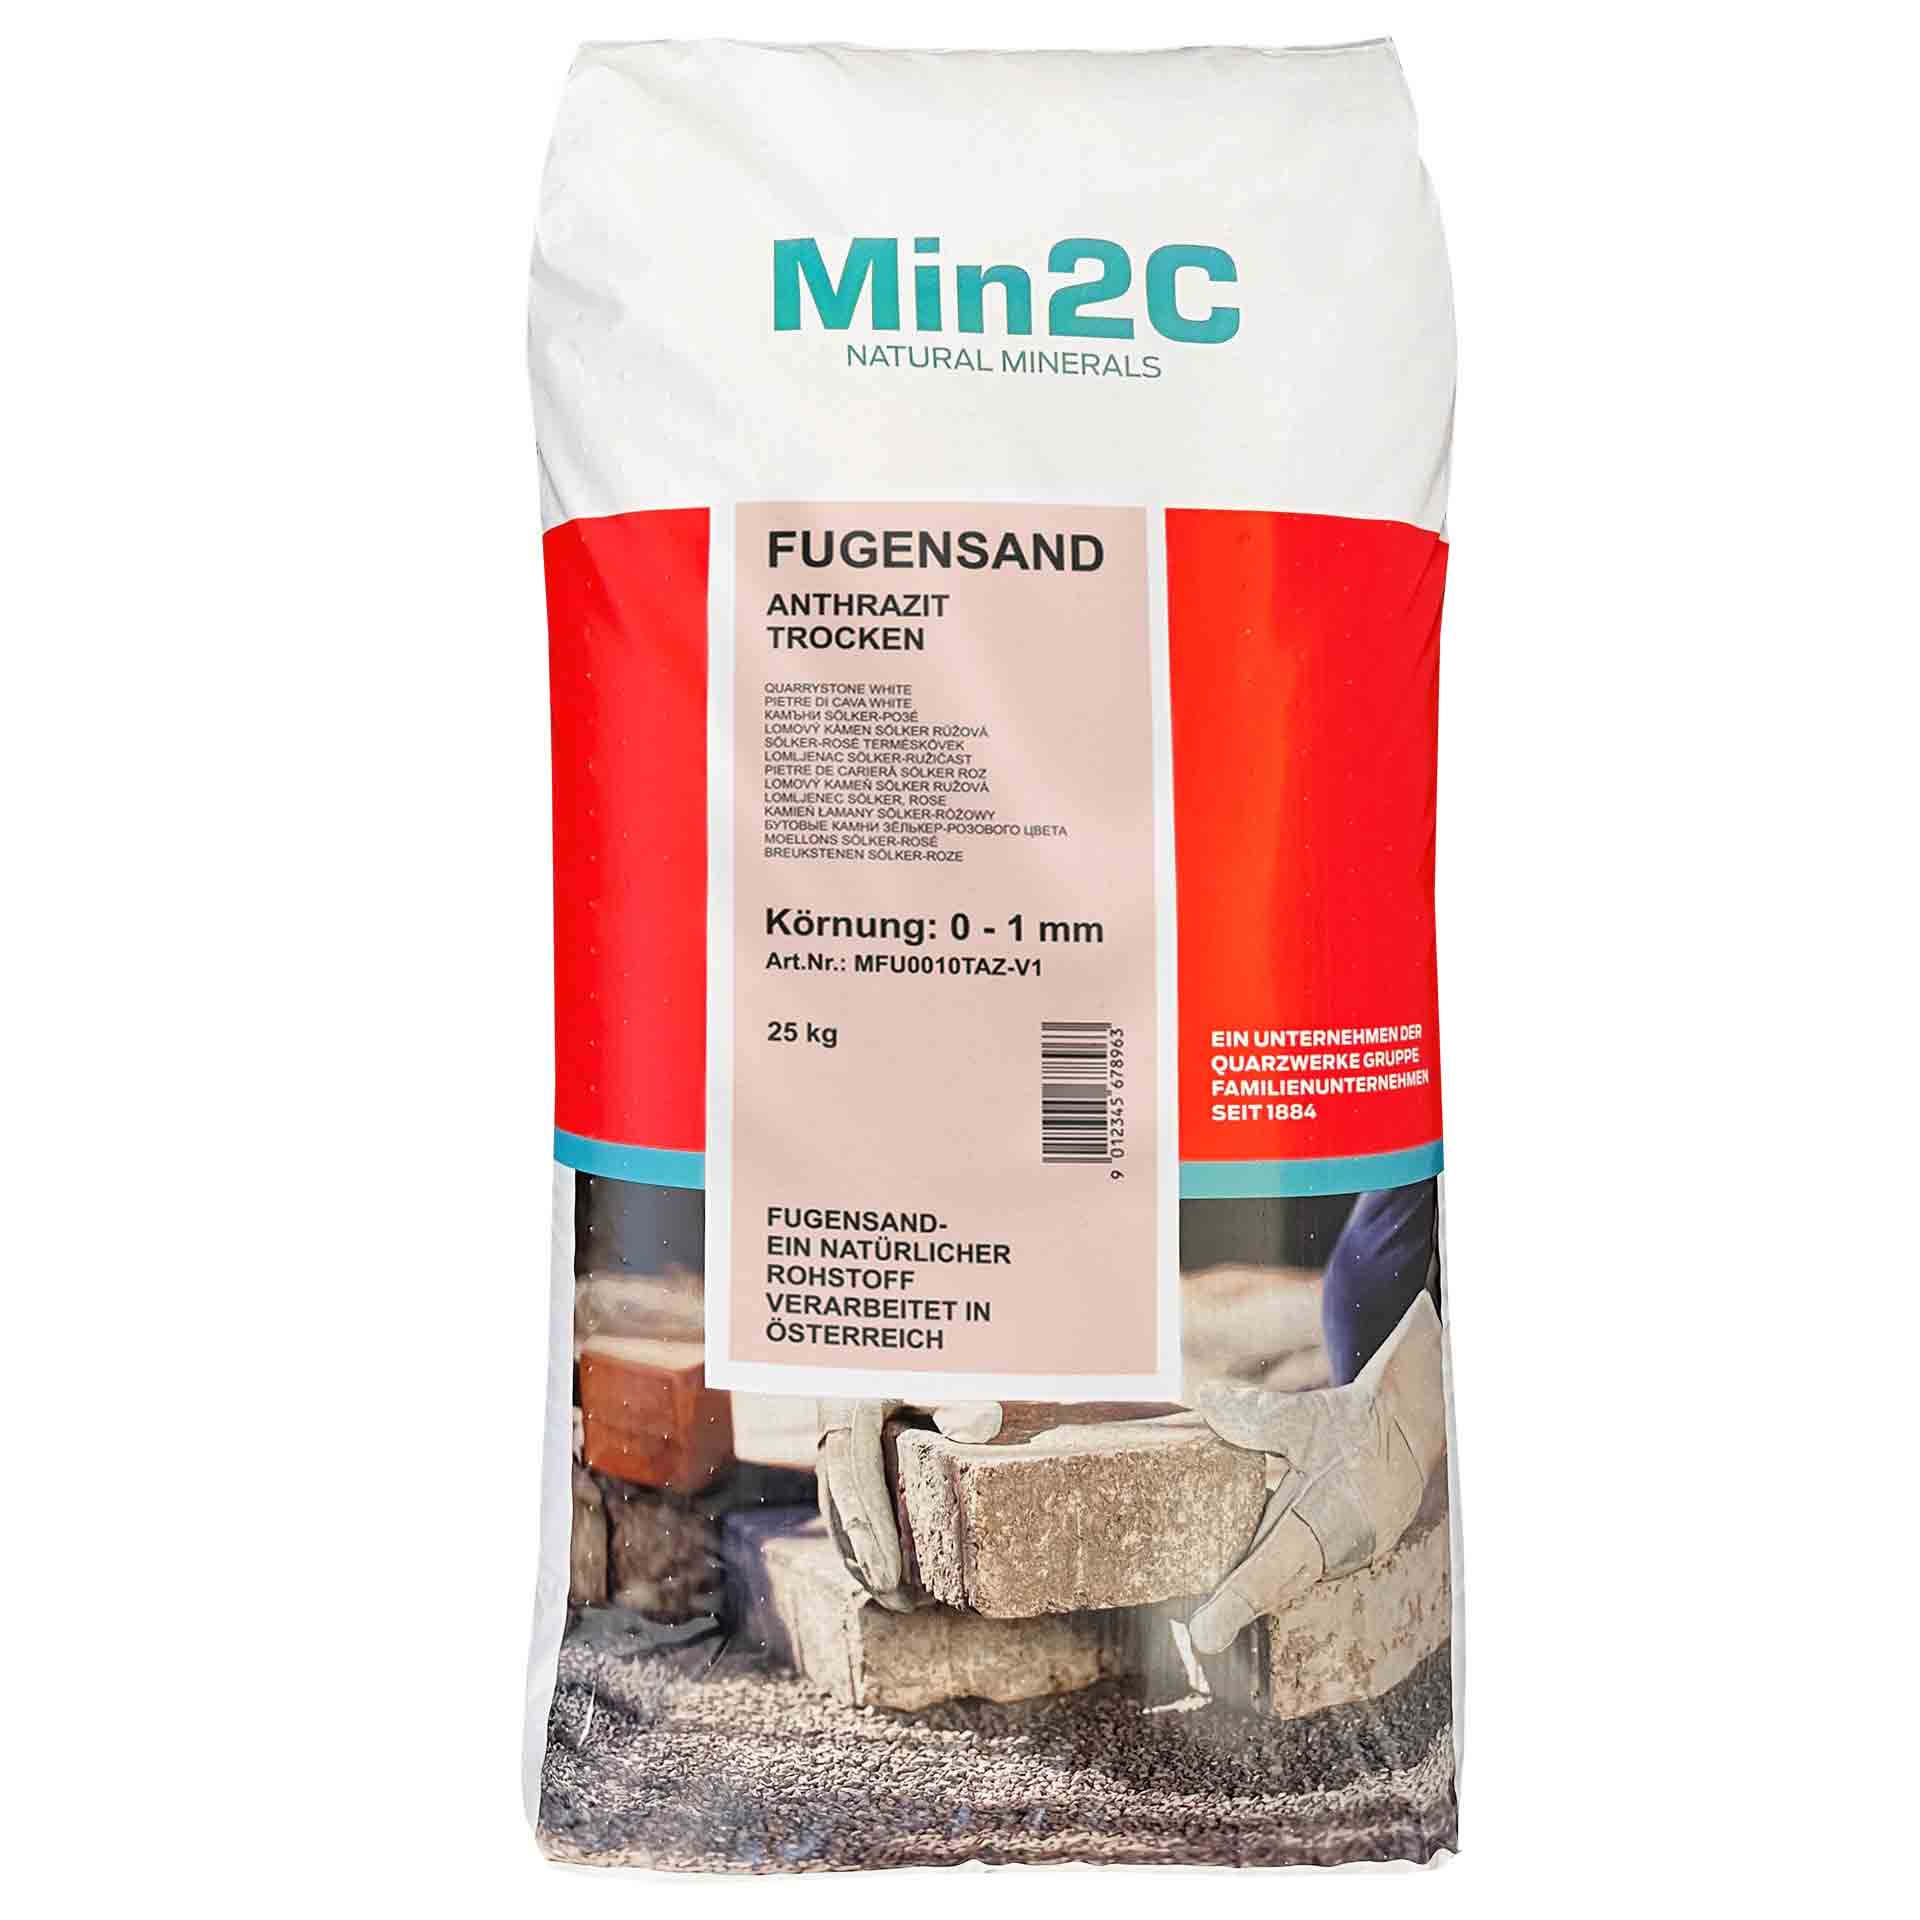 Min2C 25 kg Fugensand anthrazit 0.0-1.0 mm Premium Quarzsand